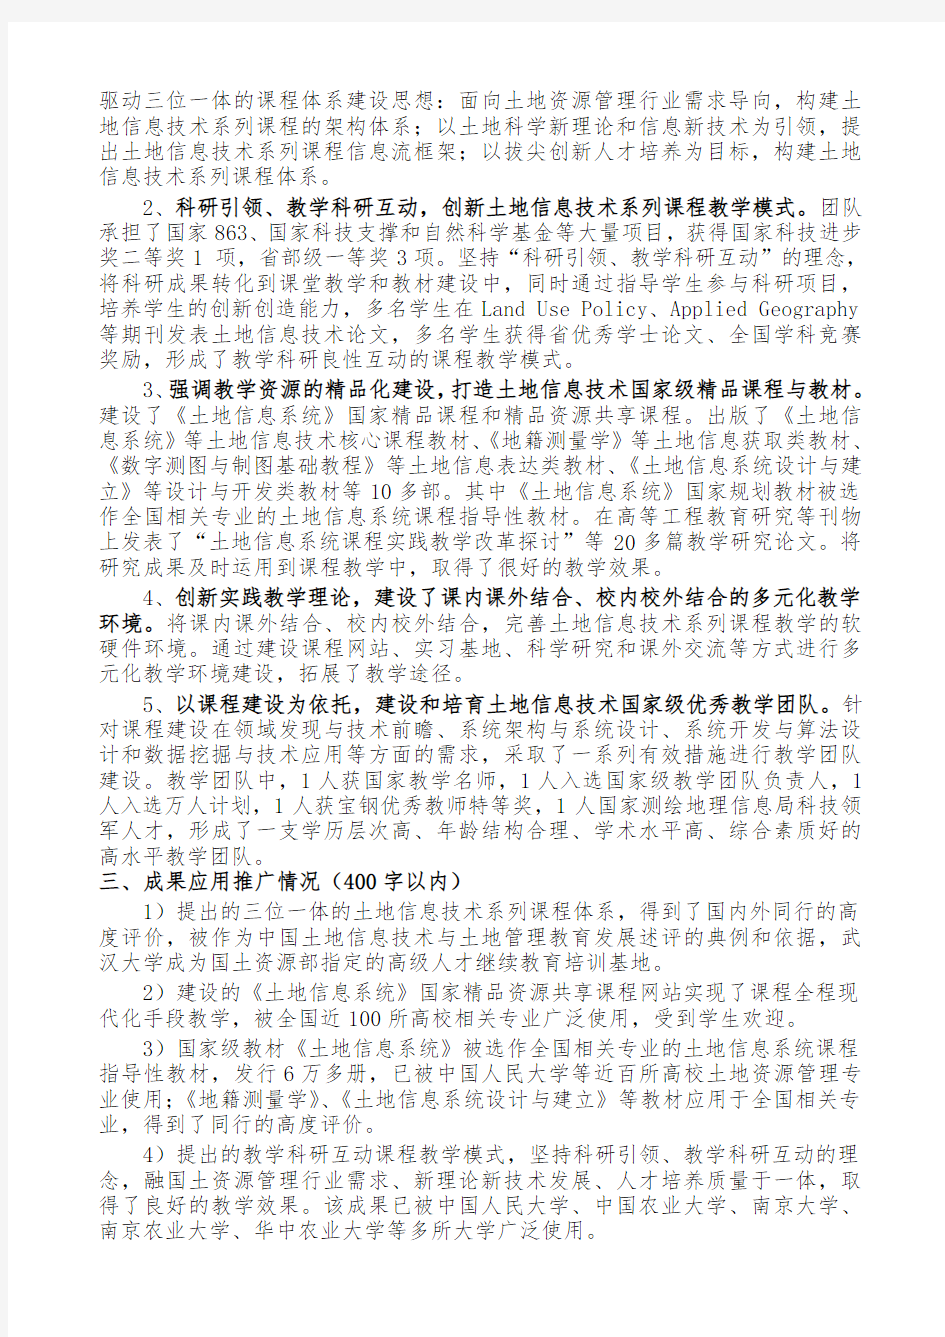 001-武汉大学-03-刘耀林-土地资源管理专业土地信息技术系列课程建设